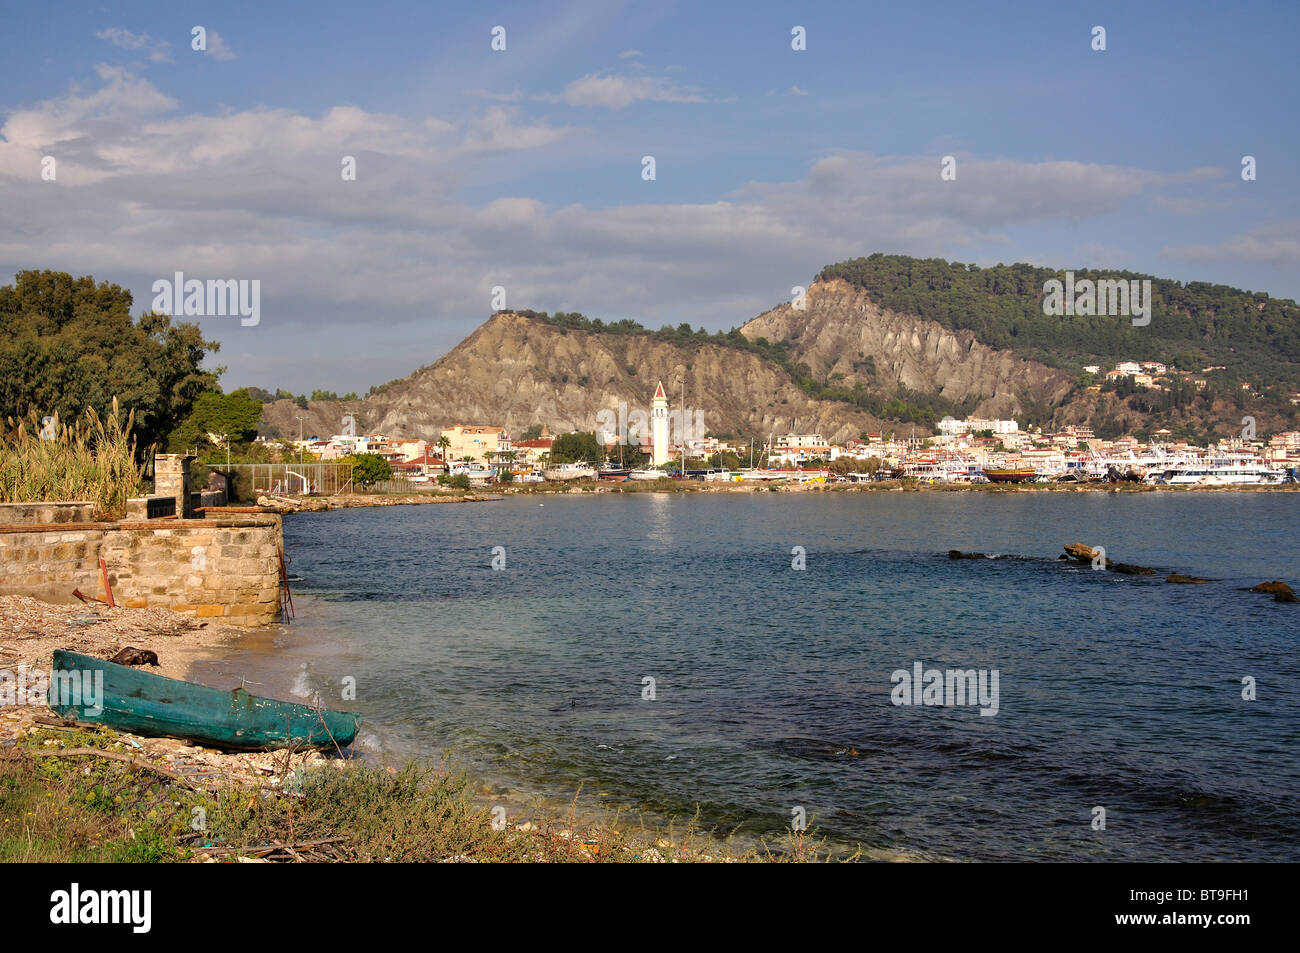 Ville et vue sur le port, la ville de Zakynthos, Zante, îles Ioniennes, Grèce Banque D'Images